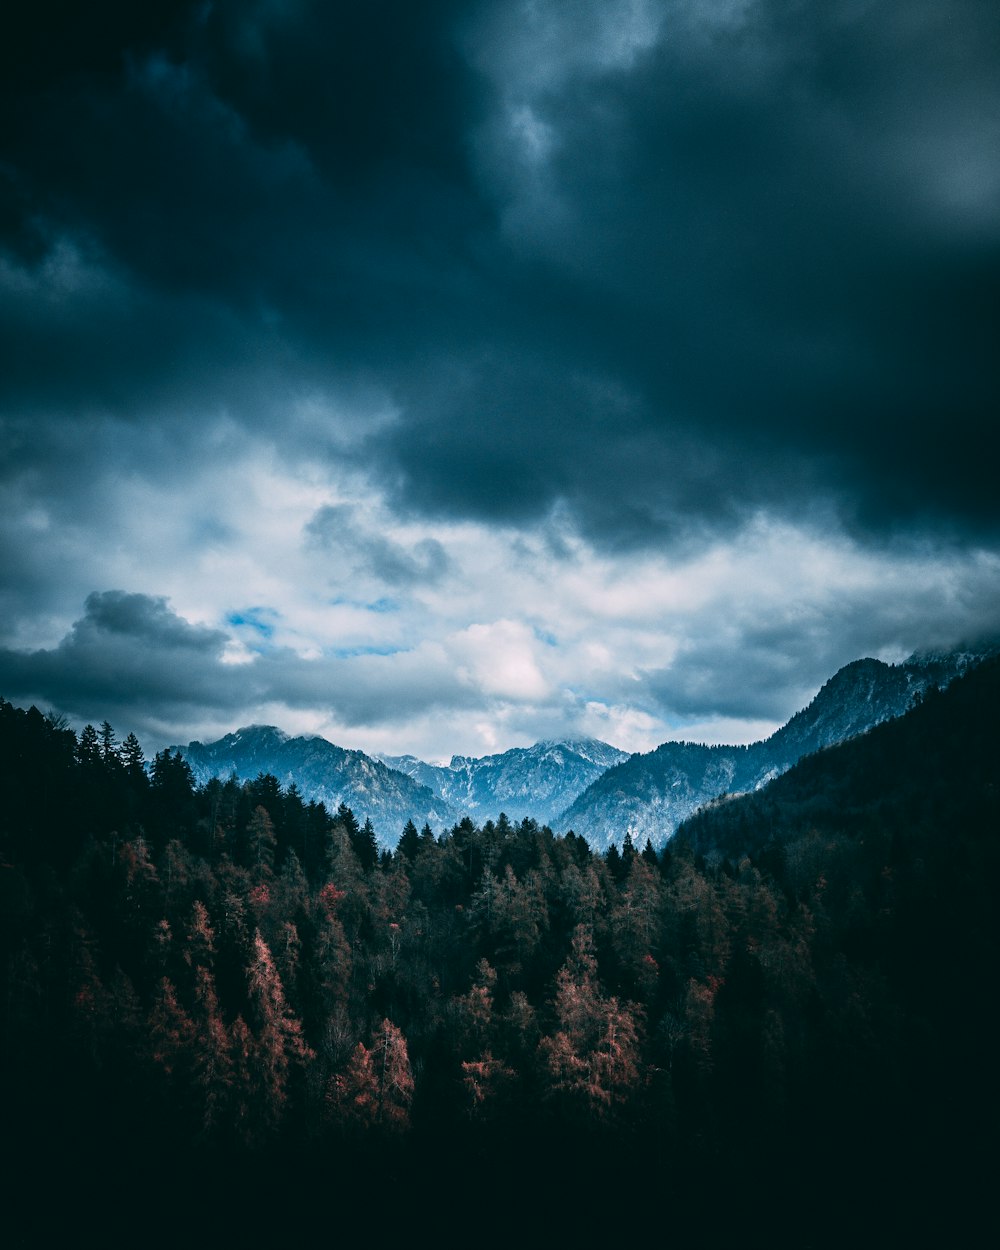 Wald und Berge unter grauen Wolken